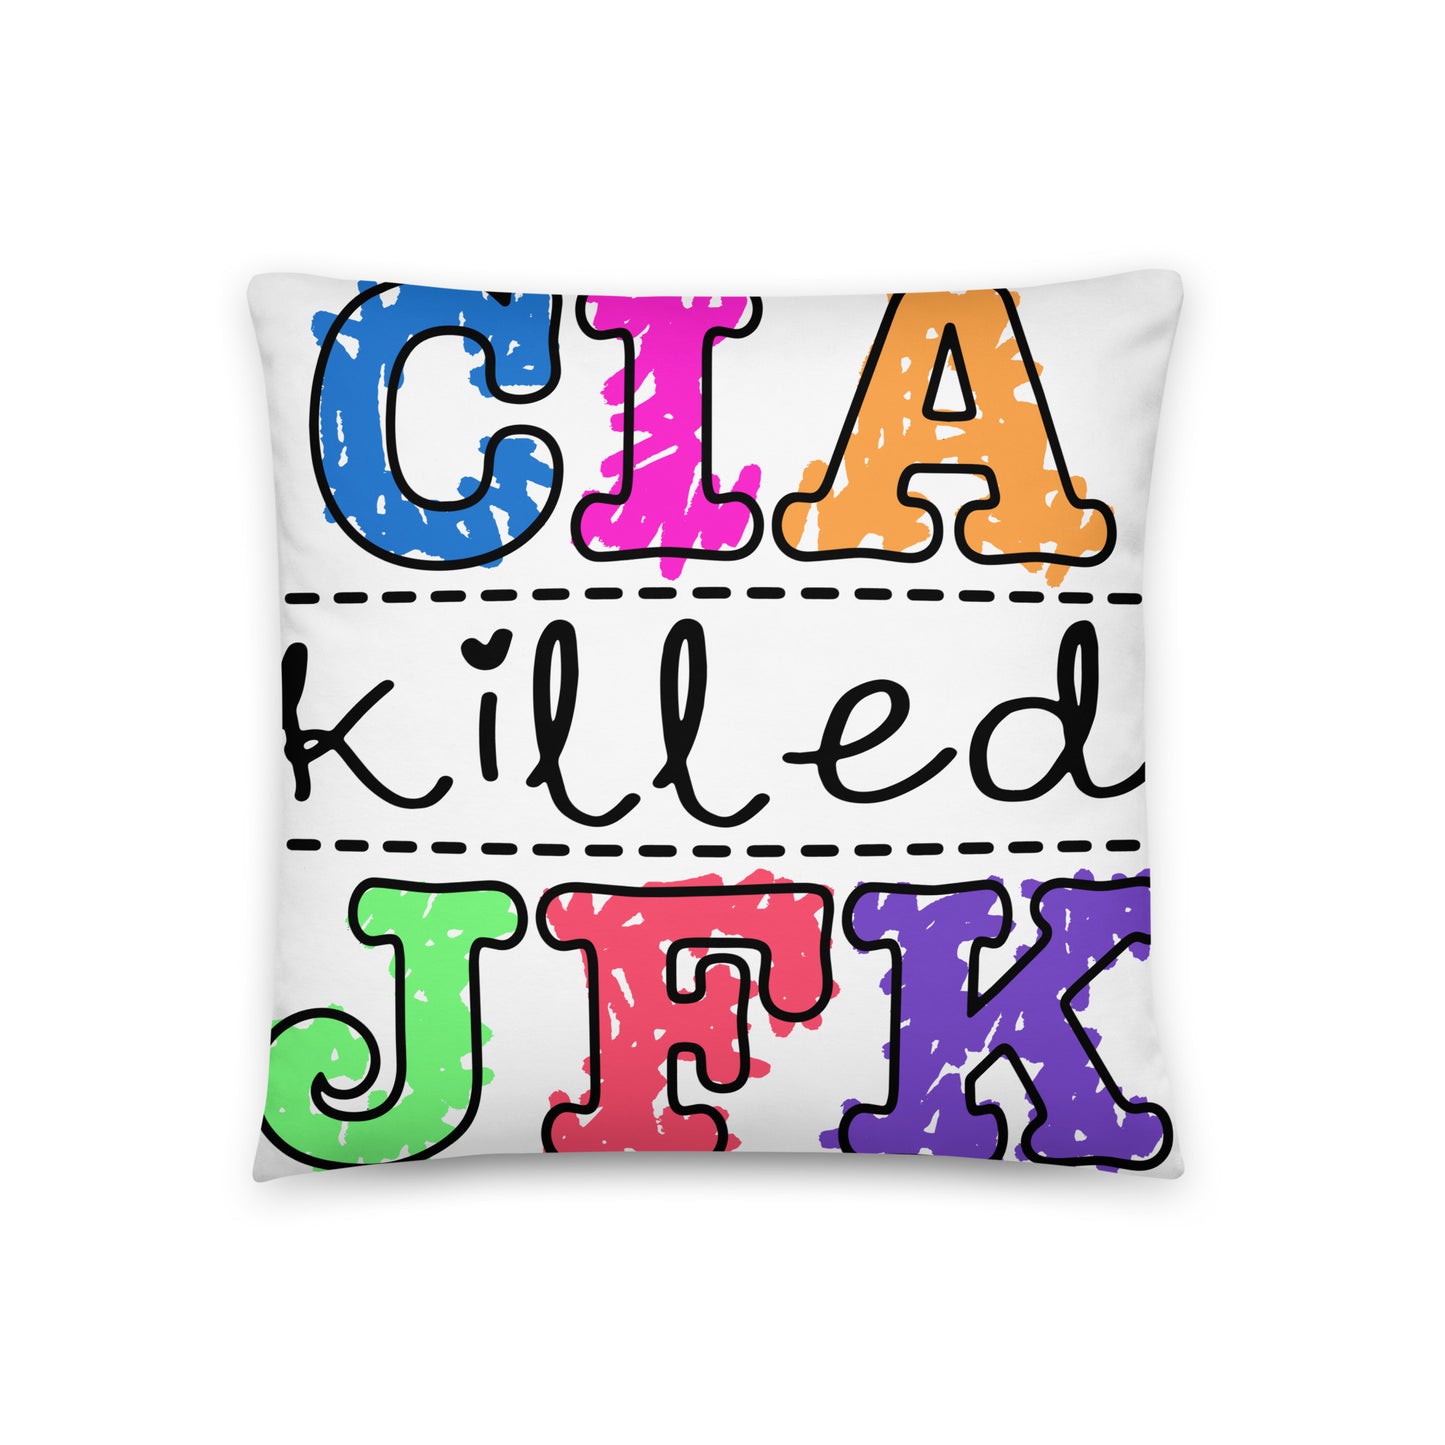 CIA Killed JFK Pillow.